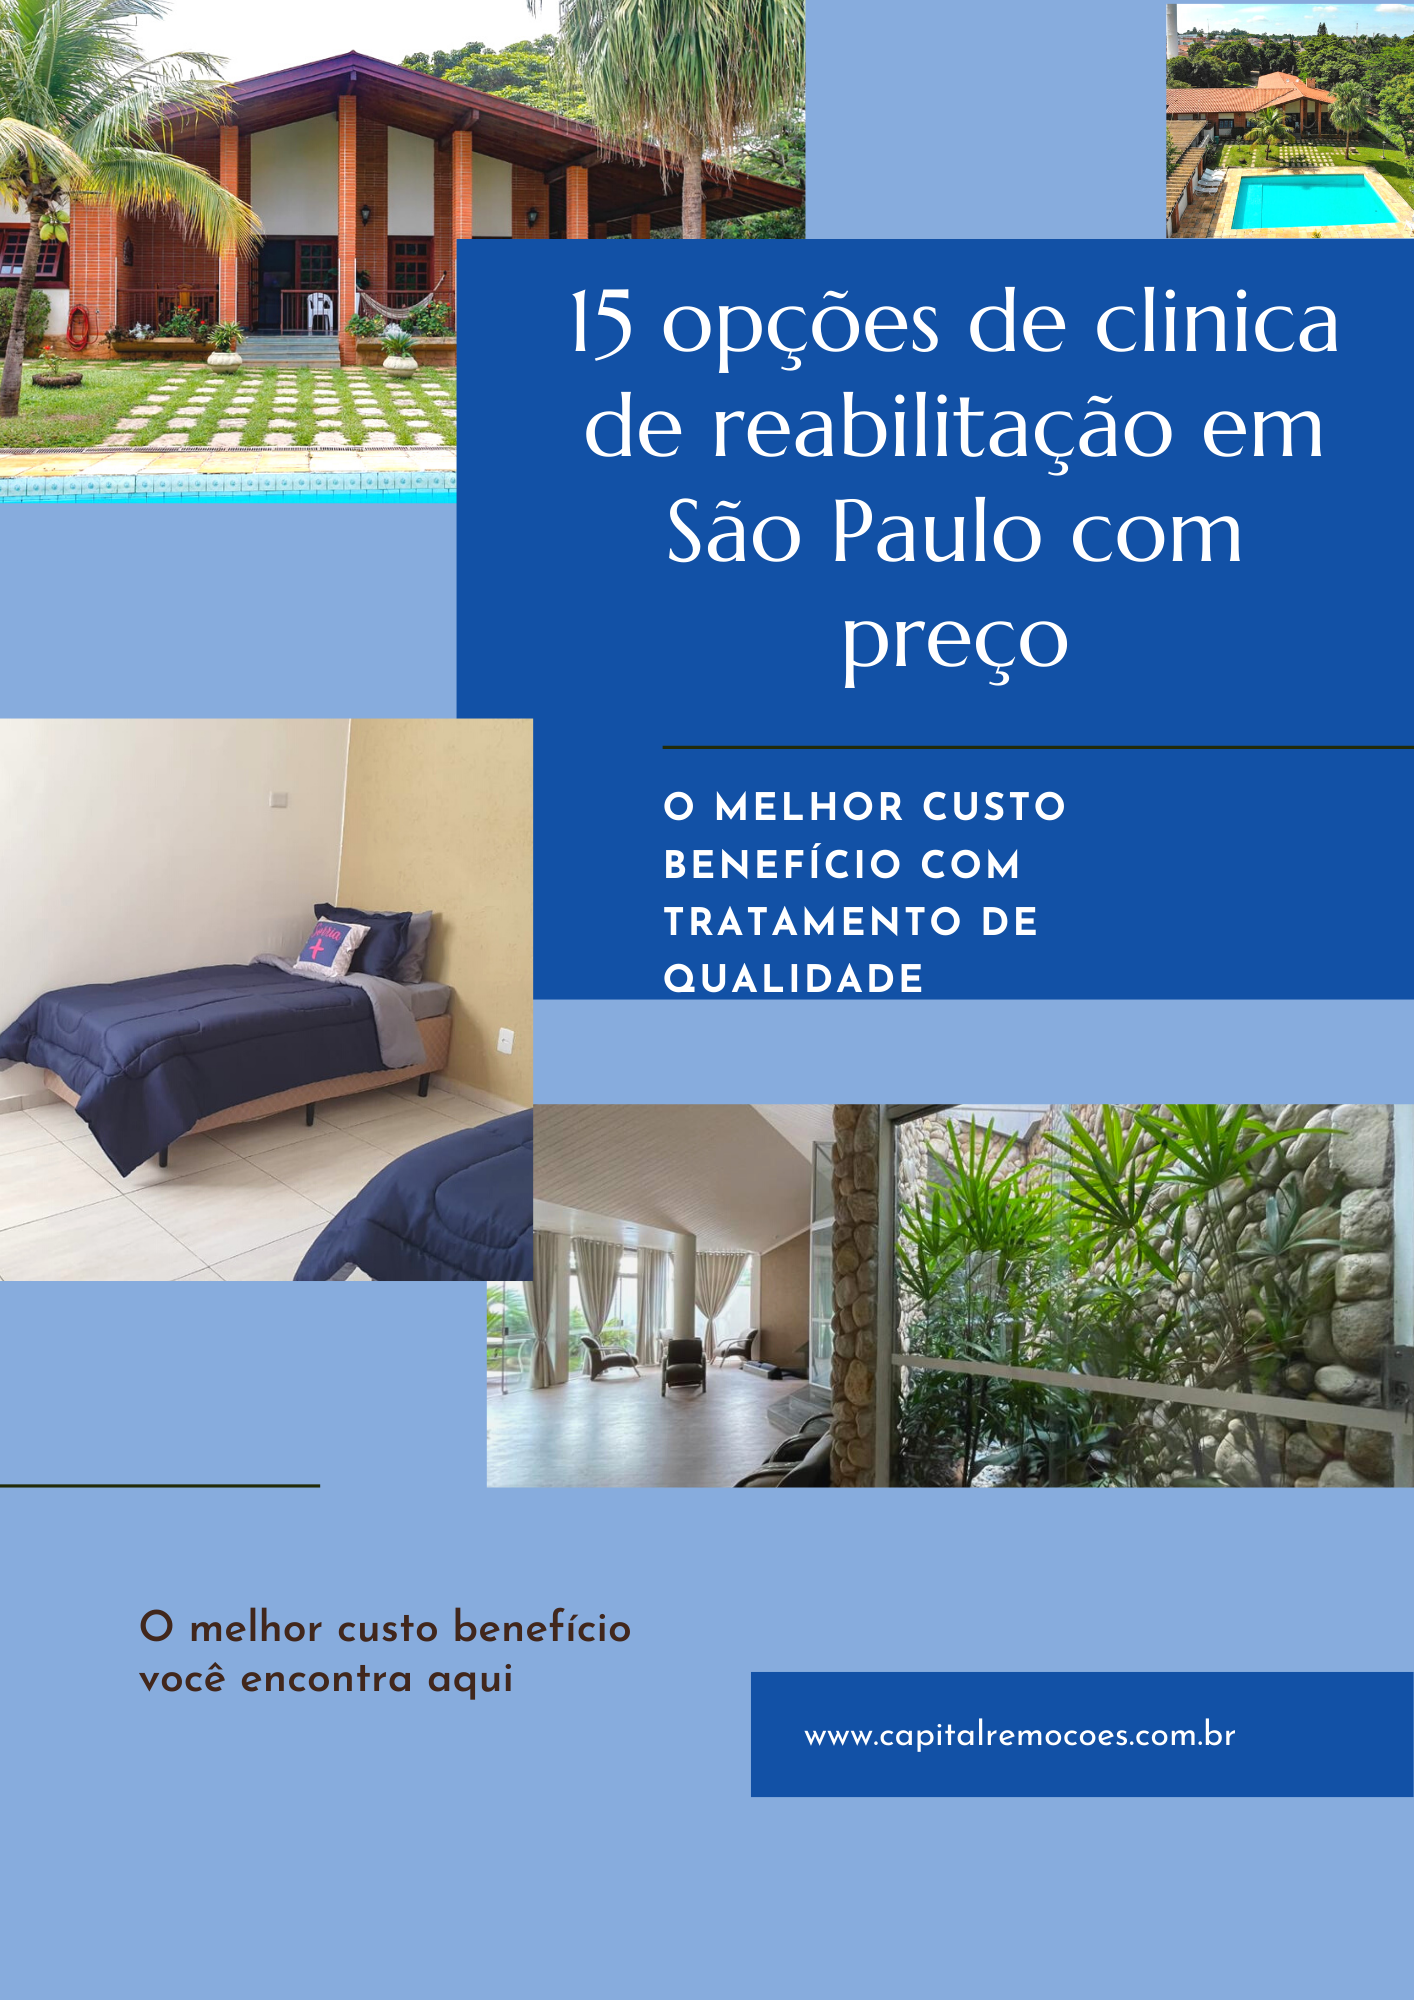 15 opções de clinica de reabilitação em São Paulo com preço